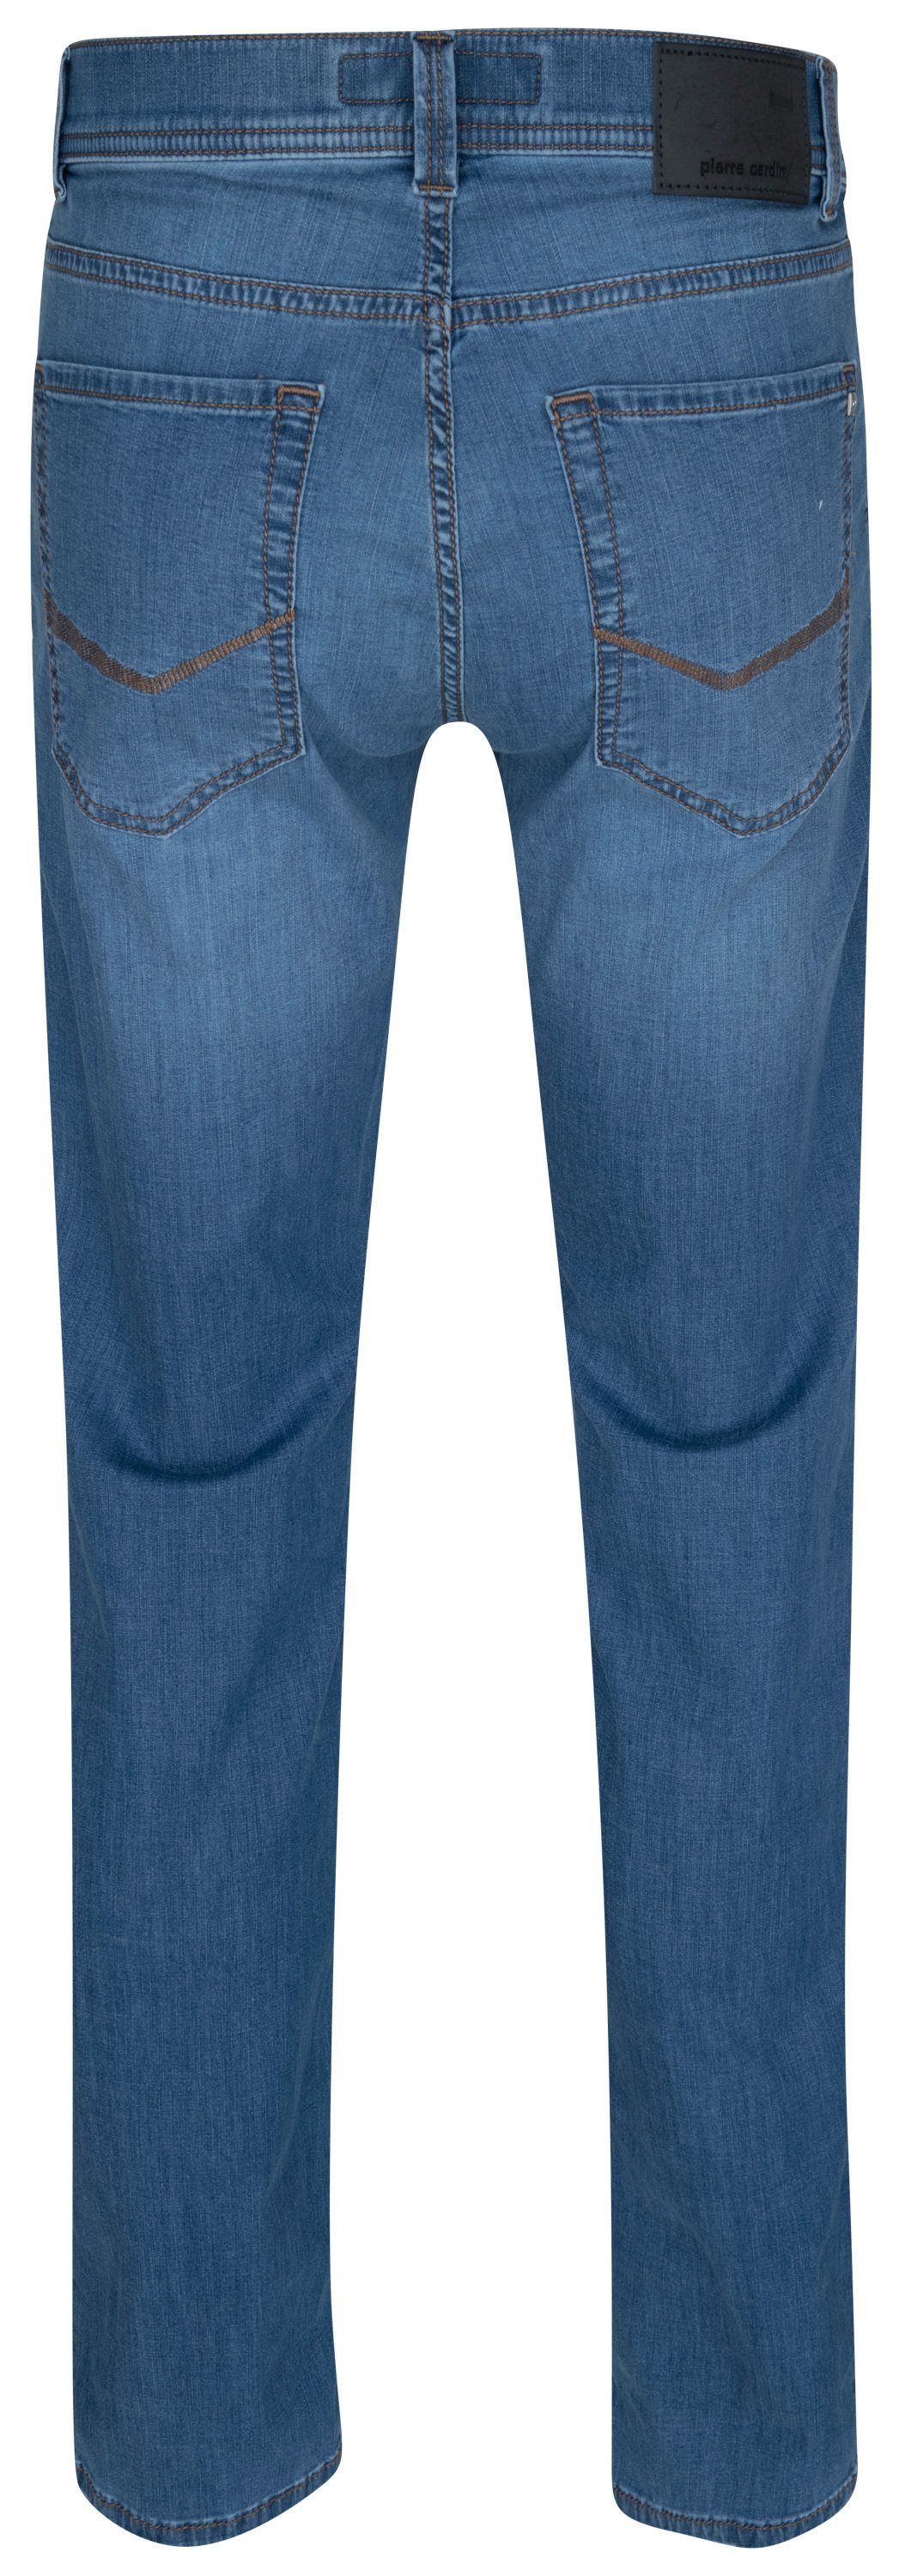 Cardin Pierre CARDIN PIERRE fashion TAPERED LYON 34510 - ocean 5-Pocket-Jeans FUTURE blue 7730.6837